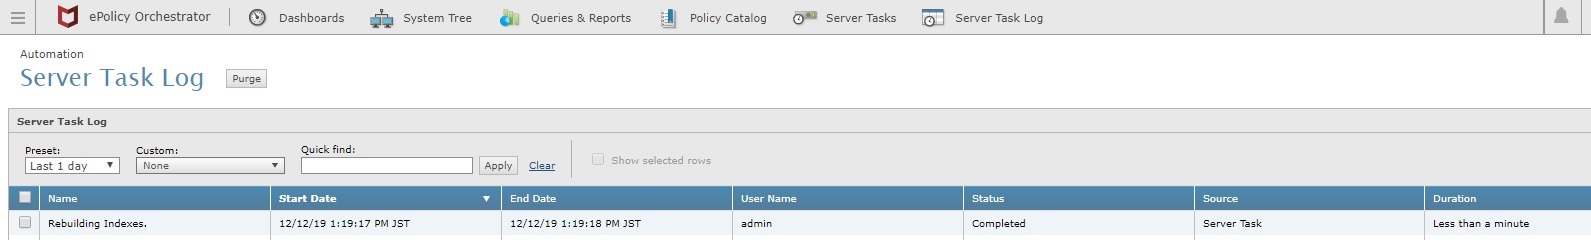 Server Task Log showing completed events